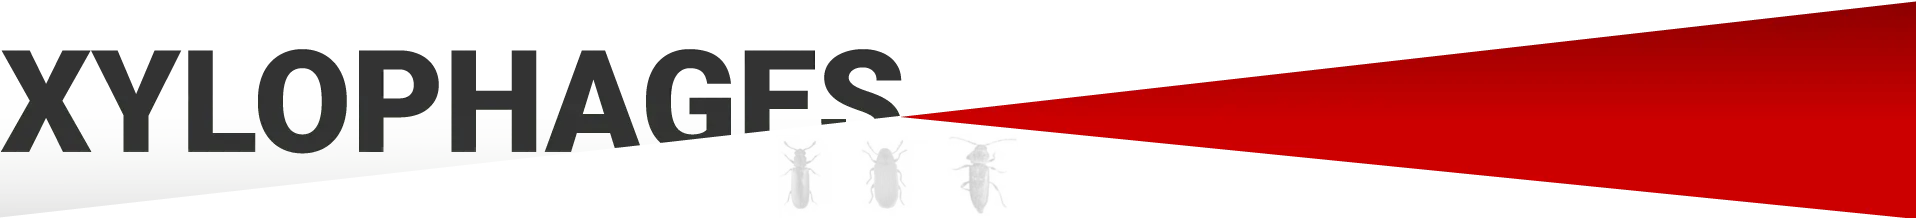 séparateur traitement à LANGON - Traitement termites, Traitement anti-termites, Traitement charpente, Traitement bois contre les insectes xylophages et les insectes à larves xylophages comme les capricorne des maisns, les vrillettes, les hespérophanes, les lyctus...Les termites mais aussi traitement anti-mérule et l'asséchement des murs humides contre les remontées capillaires à Langon, toulenne, sauternes, fargues, saint-macaire, caudrot, castets-en-dorthe, sainnt-maixant, verdelais, léognan, martillac, haux, targon, frontenac, cleyrac, cazaugitat, dieulivol, le puy, monségur, saint-martin-de-lerm, camiran, saint-sulpice-de-pommiers, gornac, baigneaux, coirac, capian, soulignac, escoussans, saint-pierre-de-bat, mourens, langoiran, podensac, beguey, cérons, loupiac, barsac, preignac, fargues, caudrot, barie, floudès, la réole, fontet, saint-vivien-de-monségur, fossès-et-baleyssac, Saint-michel-de-lapujade, mongauzy, fontret, savignac, auros, cazats, aillas, labescau, sigalens, cocumont, romestaing, masseilles, grignols, manrions, birac, sauviac, bazas, cudos, pompéjac, lignan-de-bazas, Aubiac, le nizan, roillan, noaillan, villandraut, préchac, saint-symphorien, balizac, ongne, louchats, guillos, landiras, cabanac-et-villagrains, saint-michel-de-rieufret, saint-morillon, saint-selve, la brède, saucats…